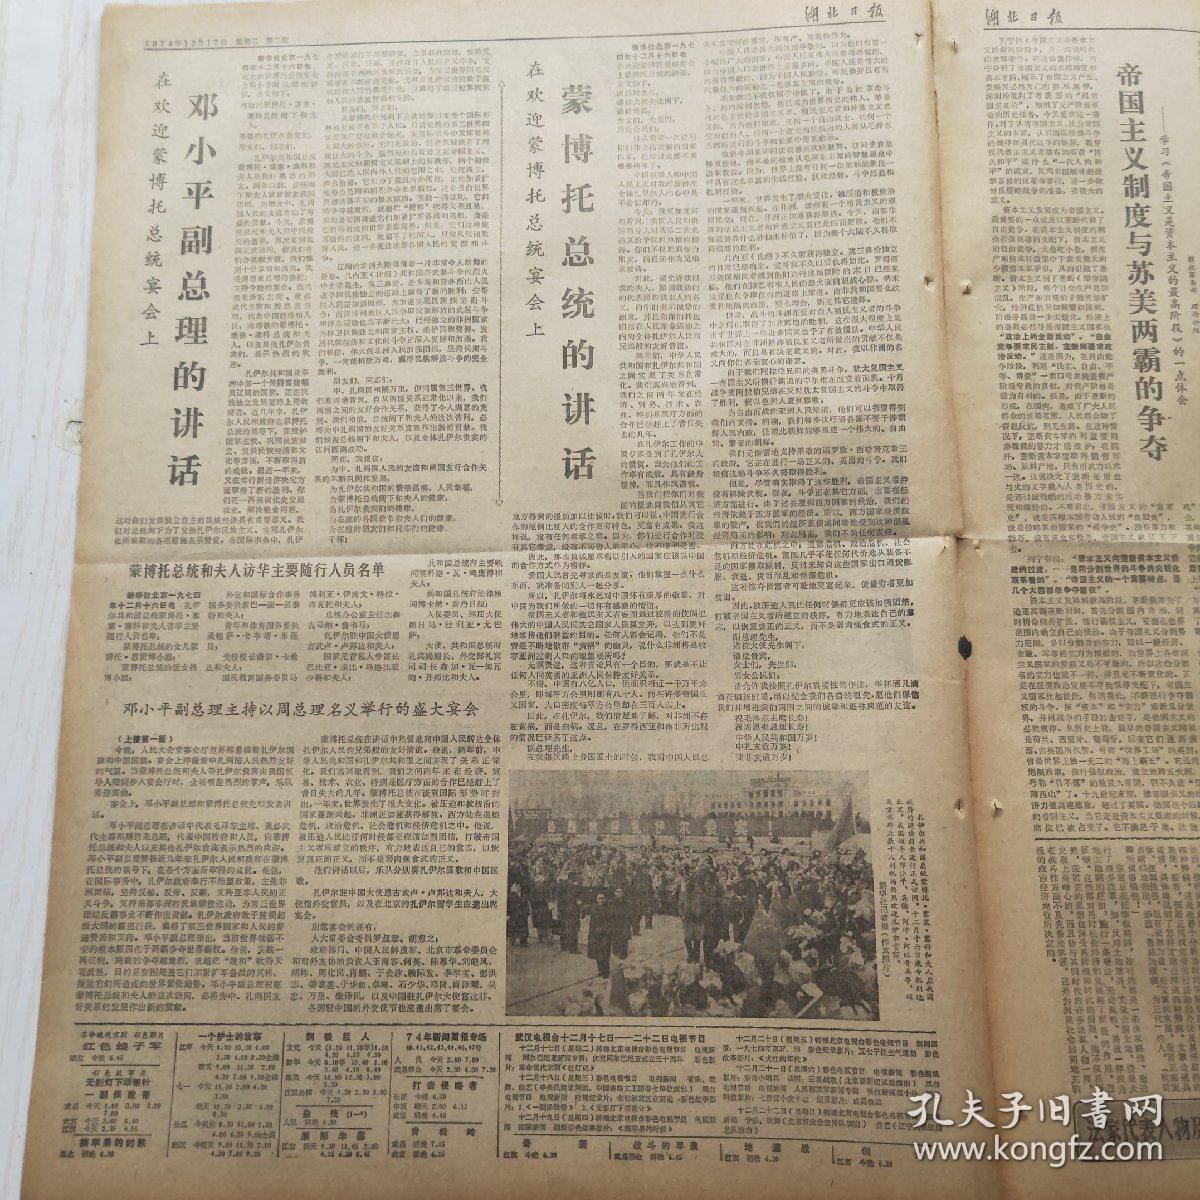 湖北日报 1974年12月17日（1-4版）邓小平副总理同蒙博托总统举行会谈，谈谈资本主义的经济危机（郑经兵）